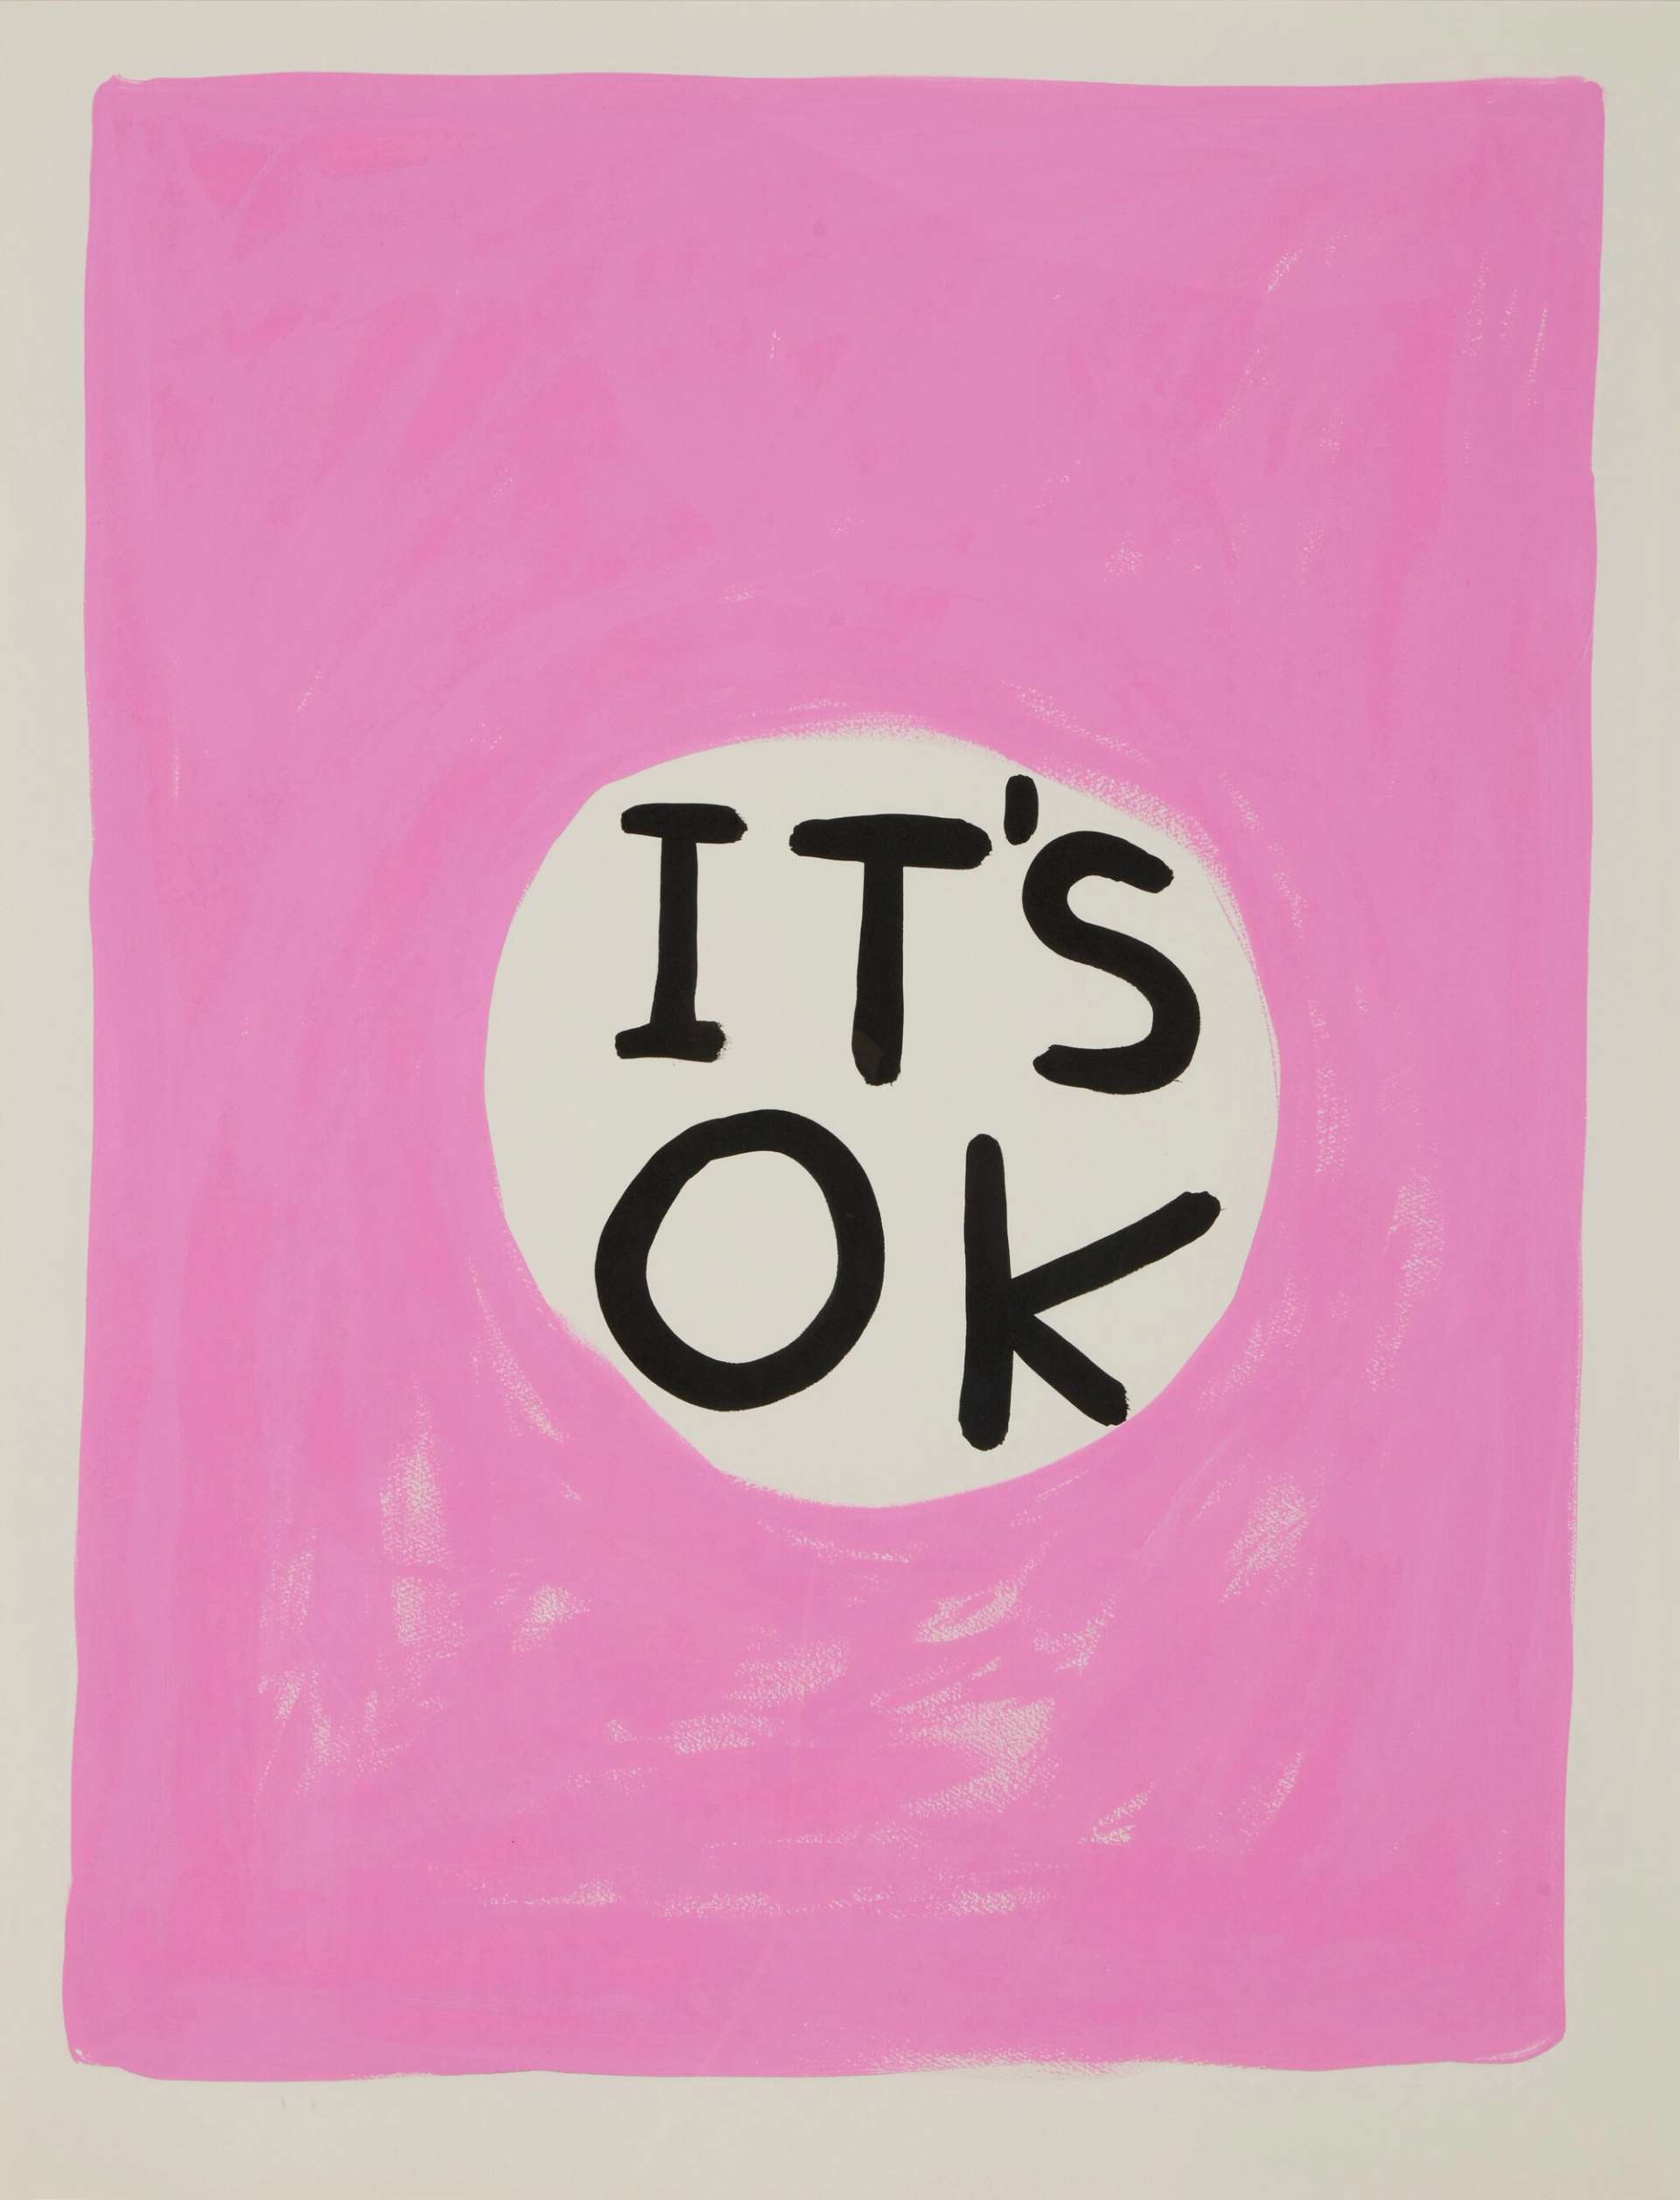 Untitled (It's Ok) by David Shrigley